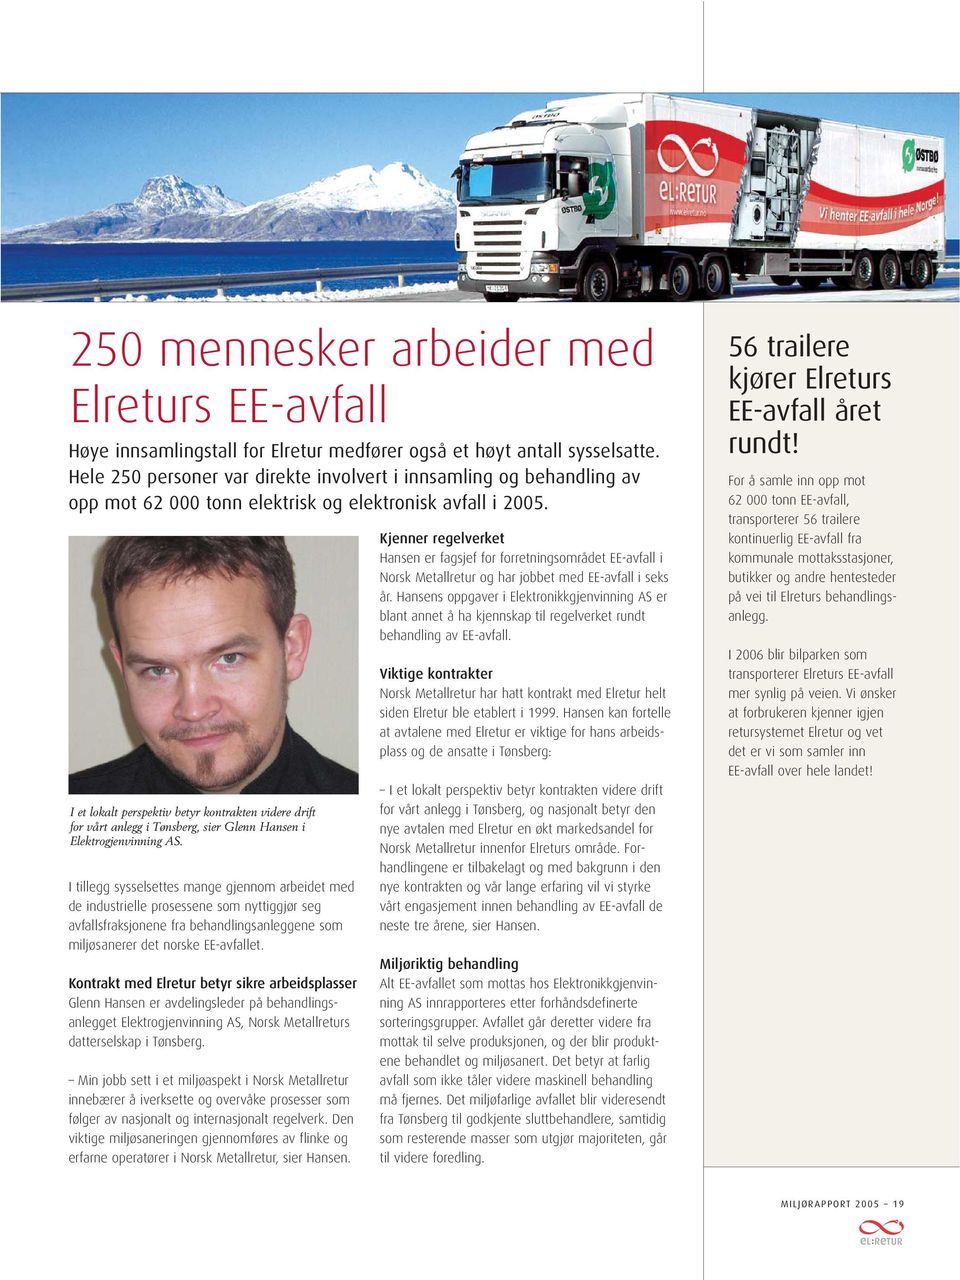 I et lokalt perspektiv betyr kontrakten videre drift for vårt anlegg i Tønsberg, sier Glenn Hansen i Elektrogjenvinning AS.